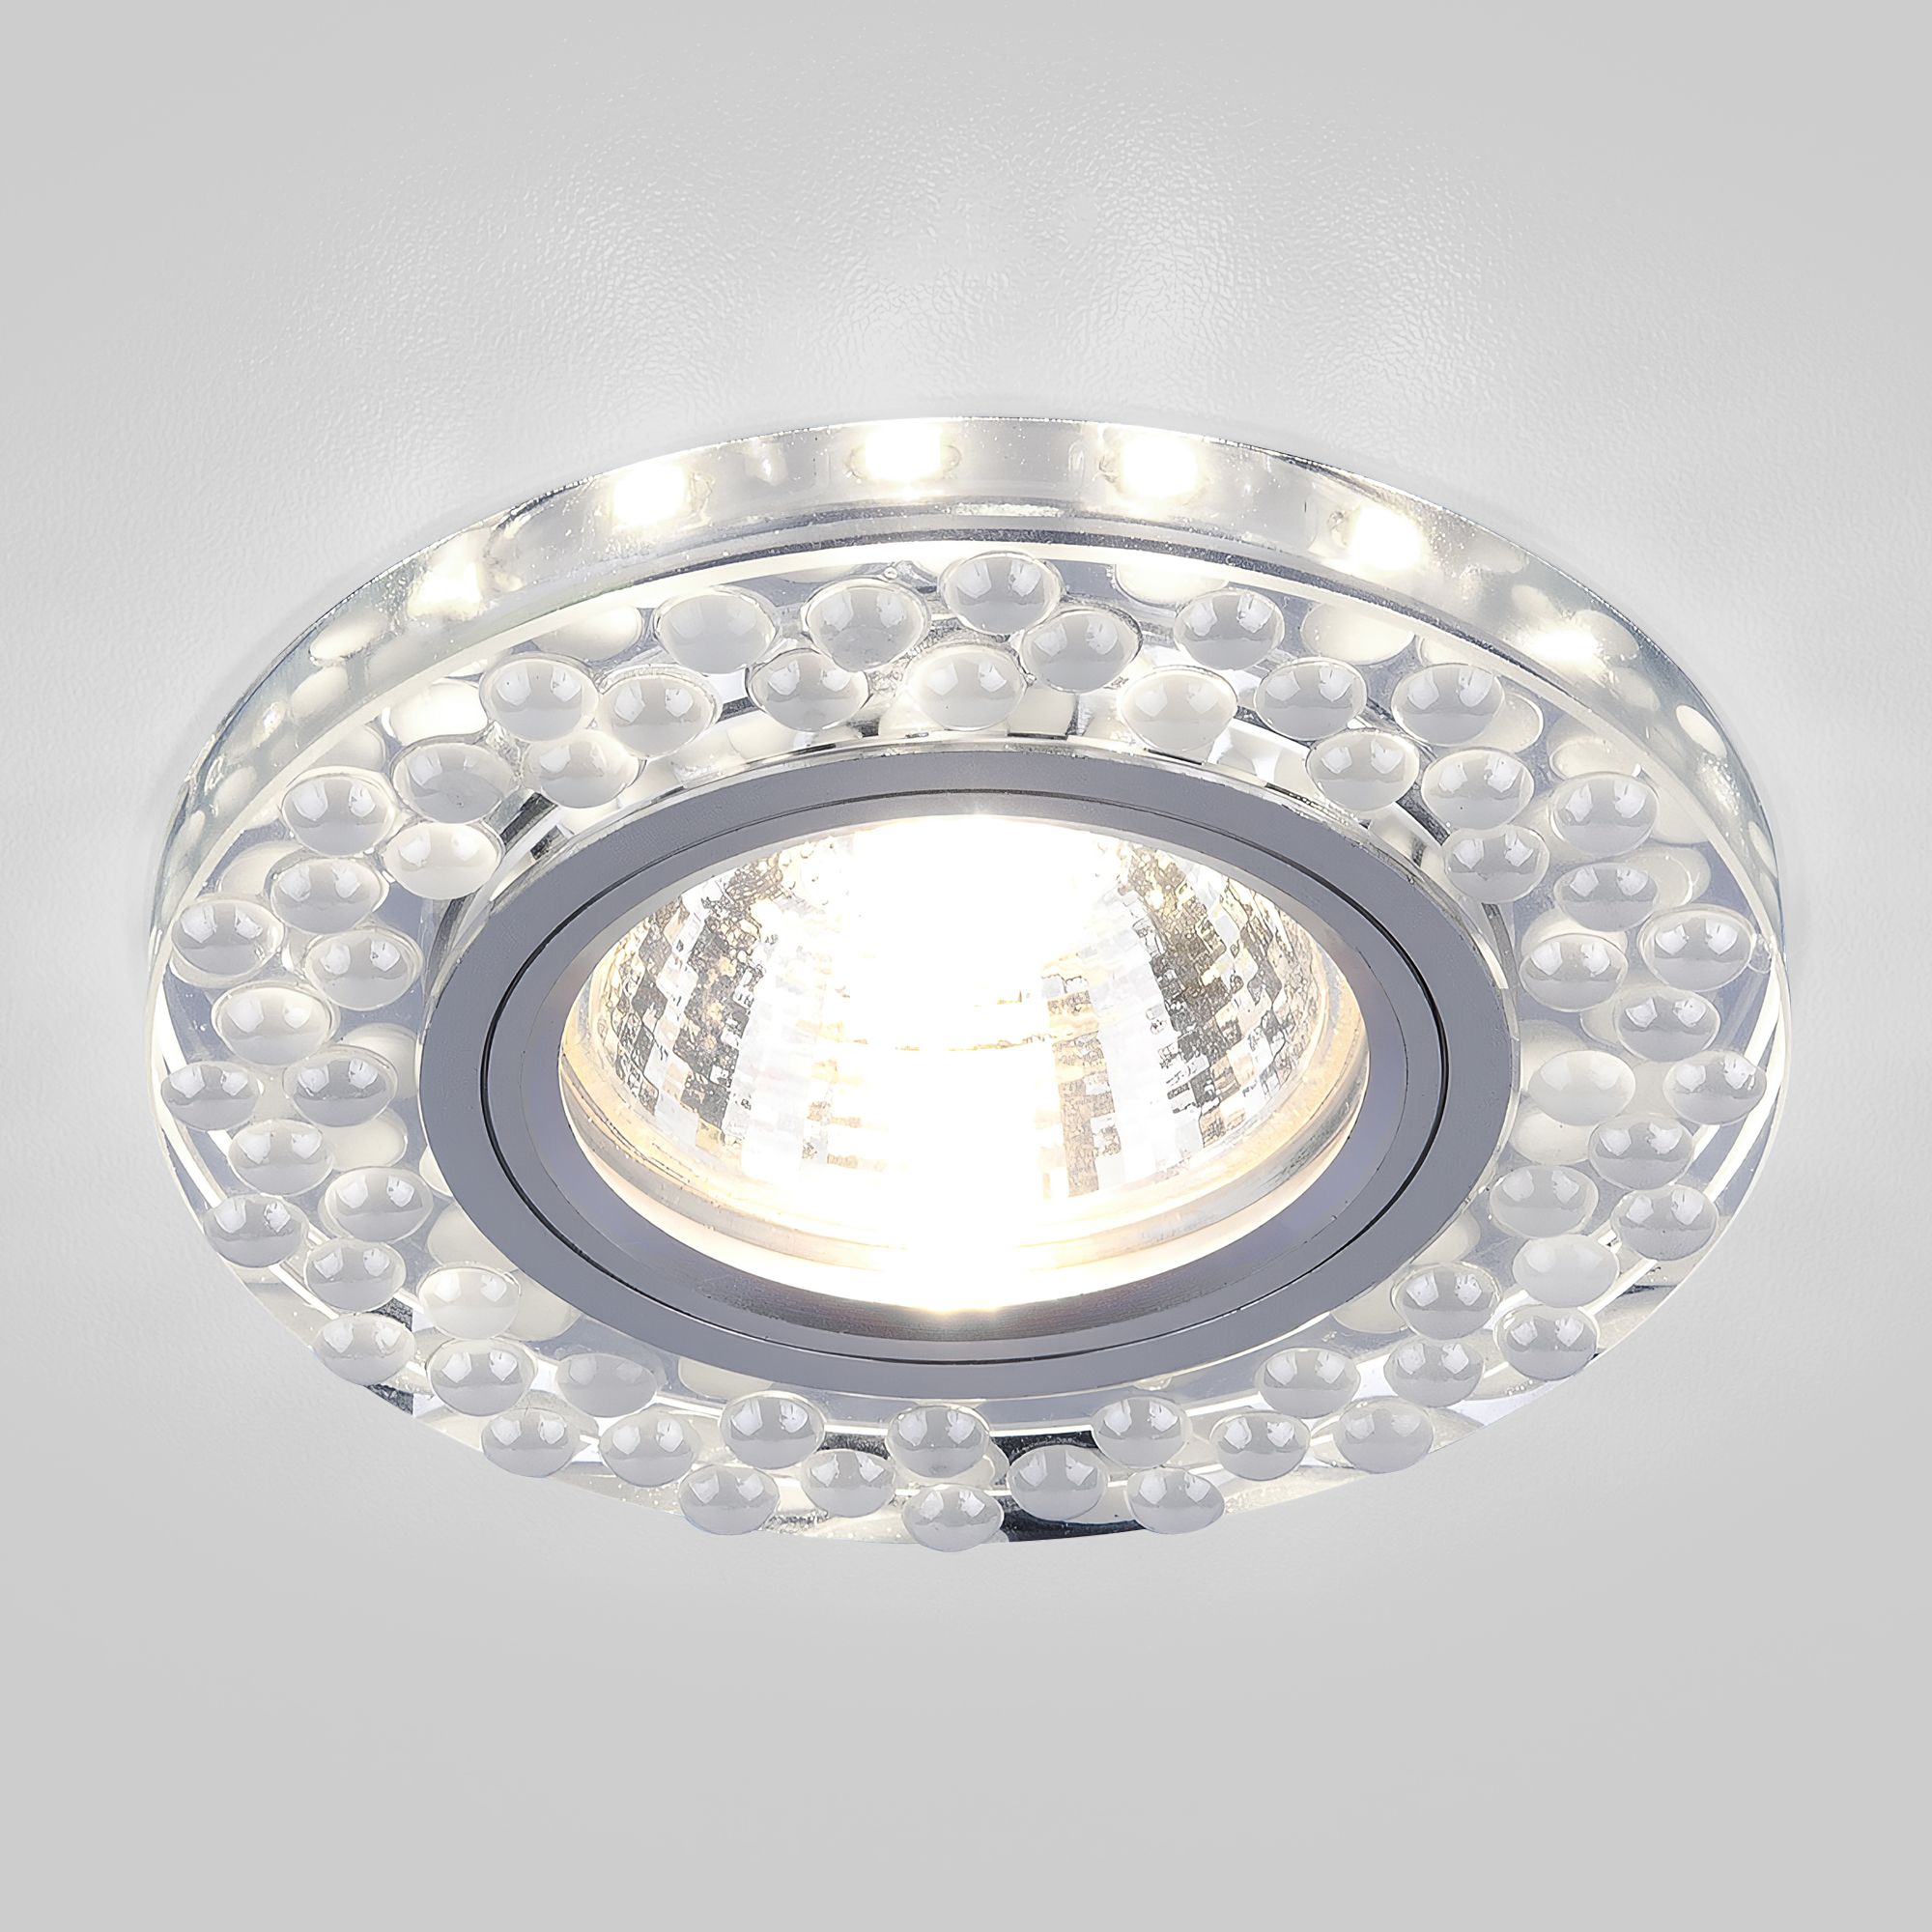 Встраиваемый точечный светильник с LED подсветкой 2194 MR16 SL/WH зеркальный/белый 2194 MR16